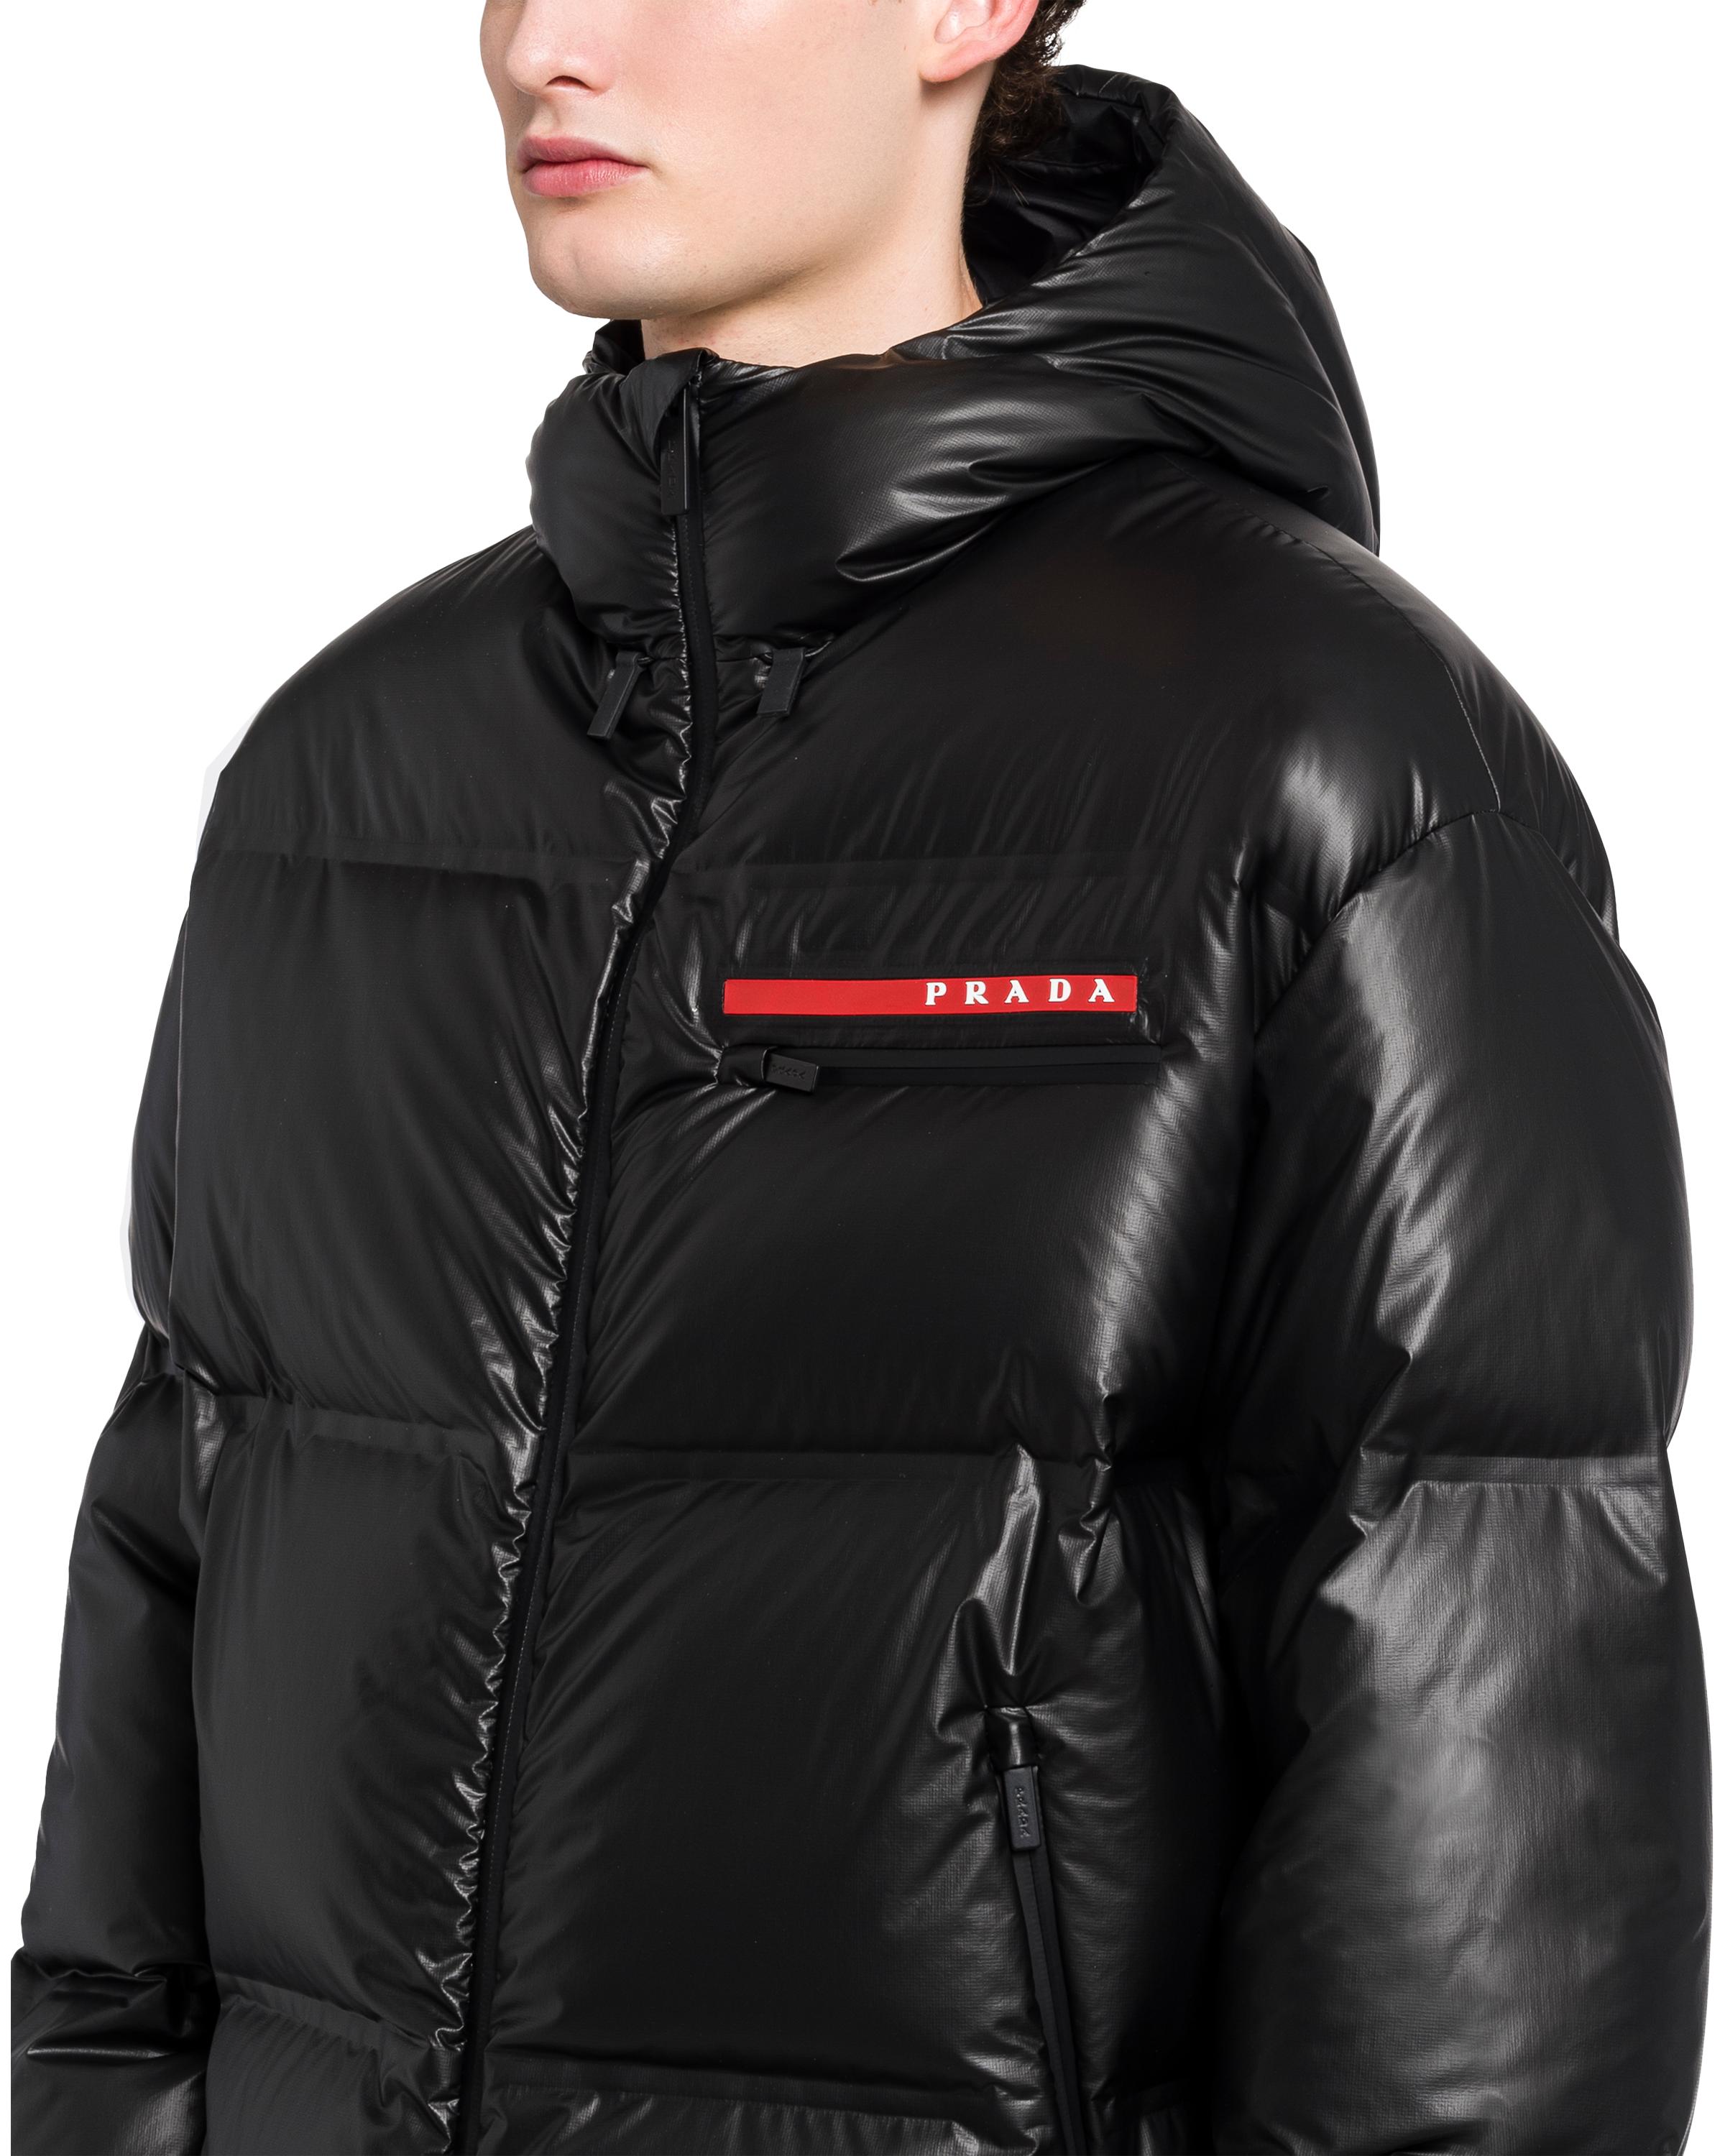 Prada Synthetic Light Nylon Hooded Puffer Jacket in Black for Men - Lyst